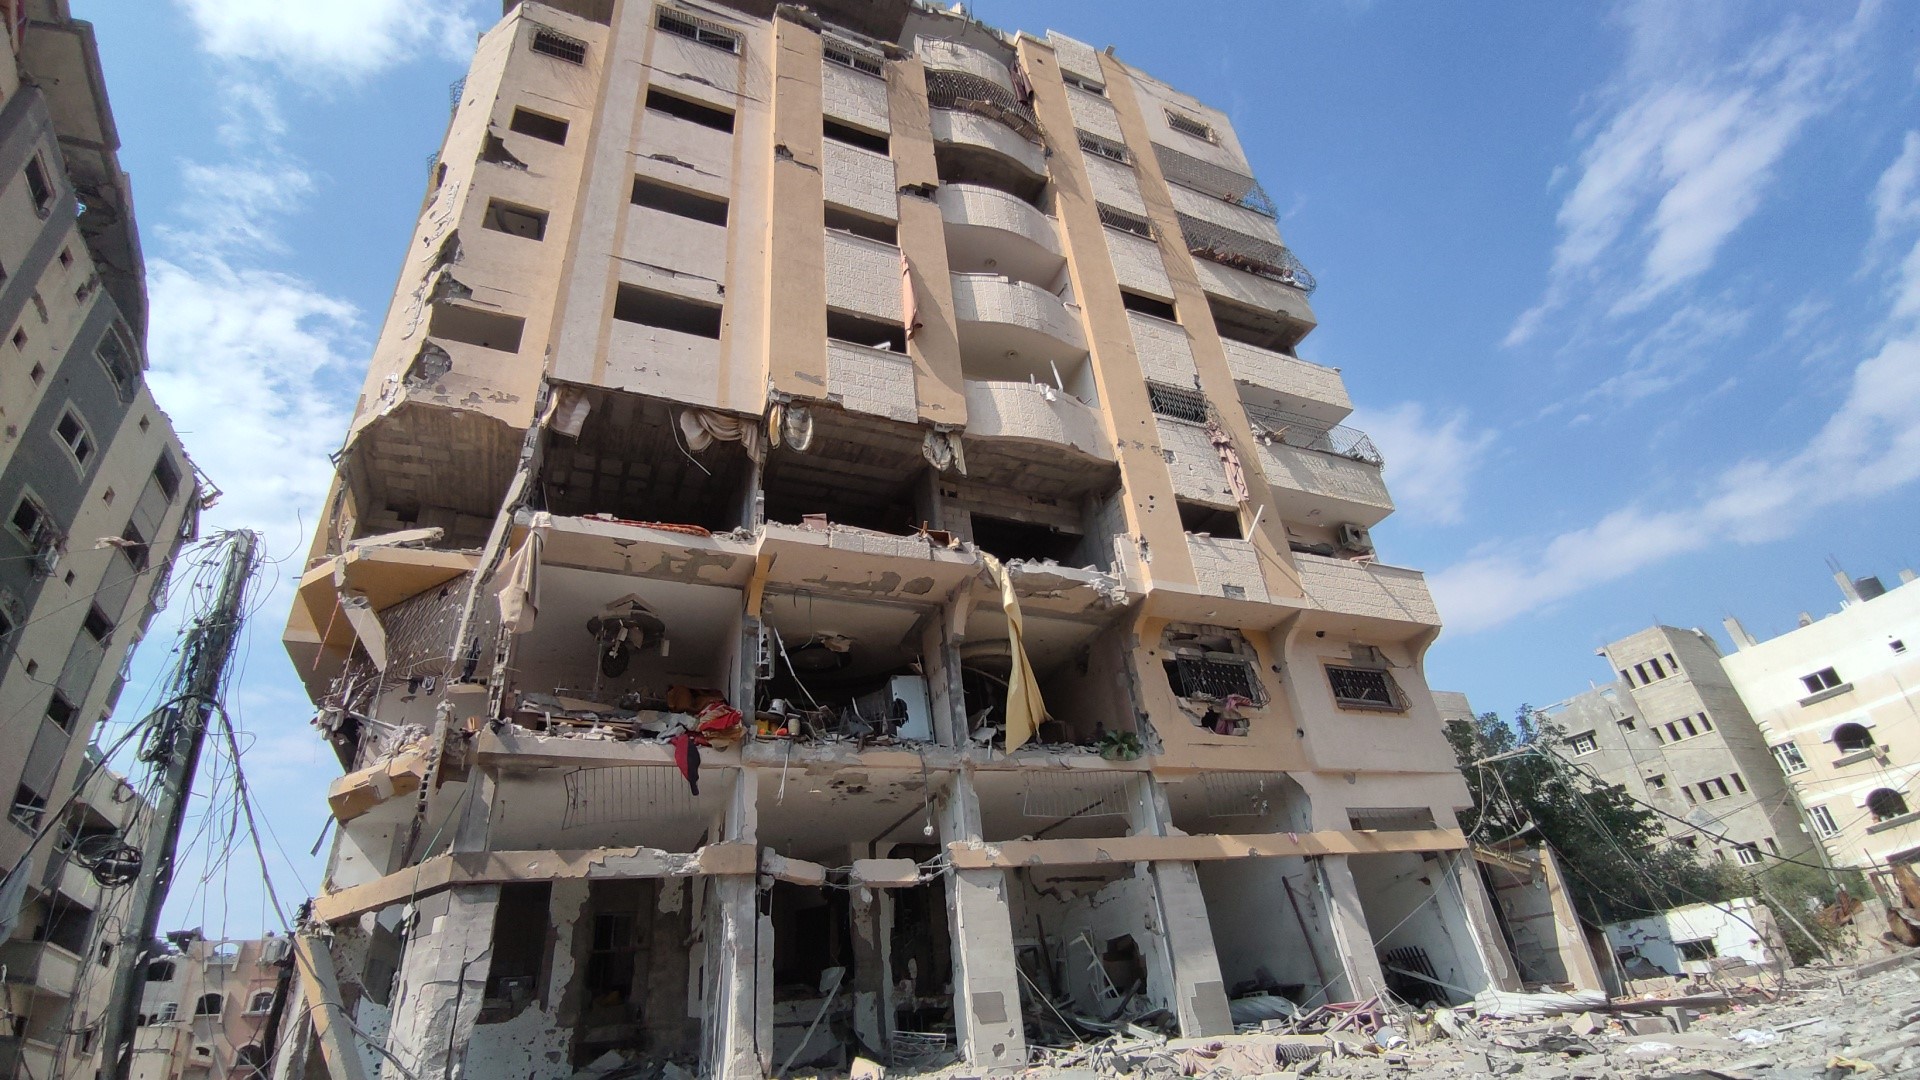 İsrail’in vurduğu Al-Karama Mahallesi’ndeki yıkım görüntülendi